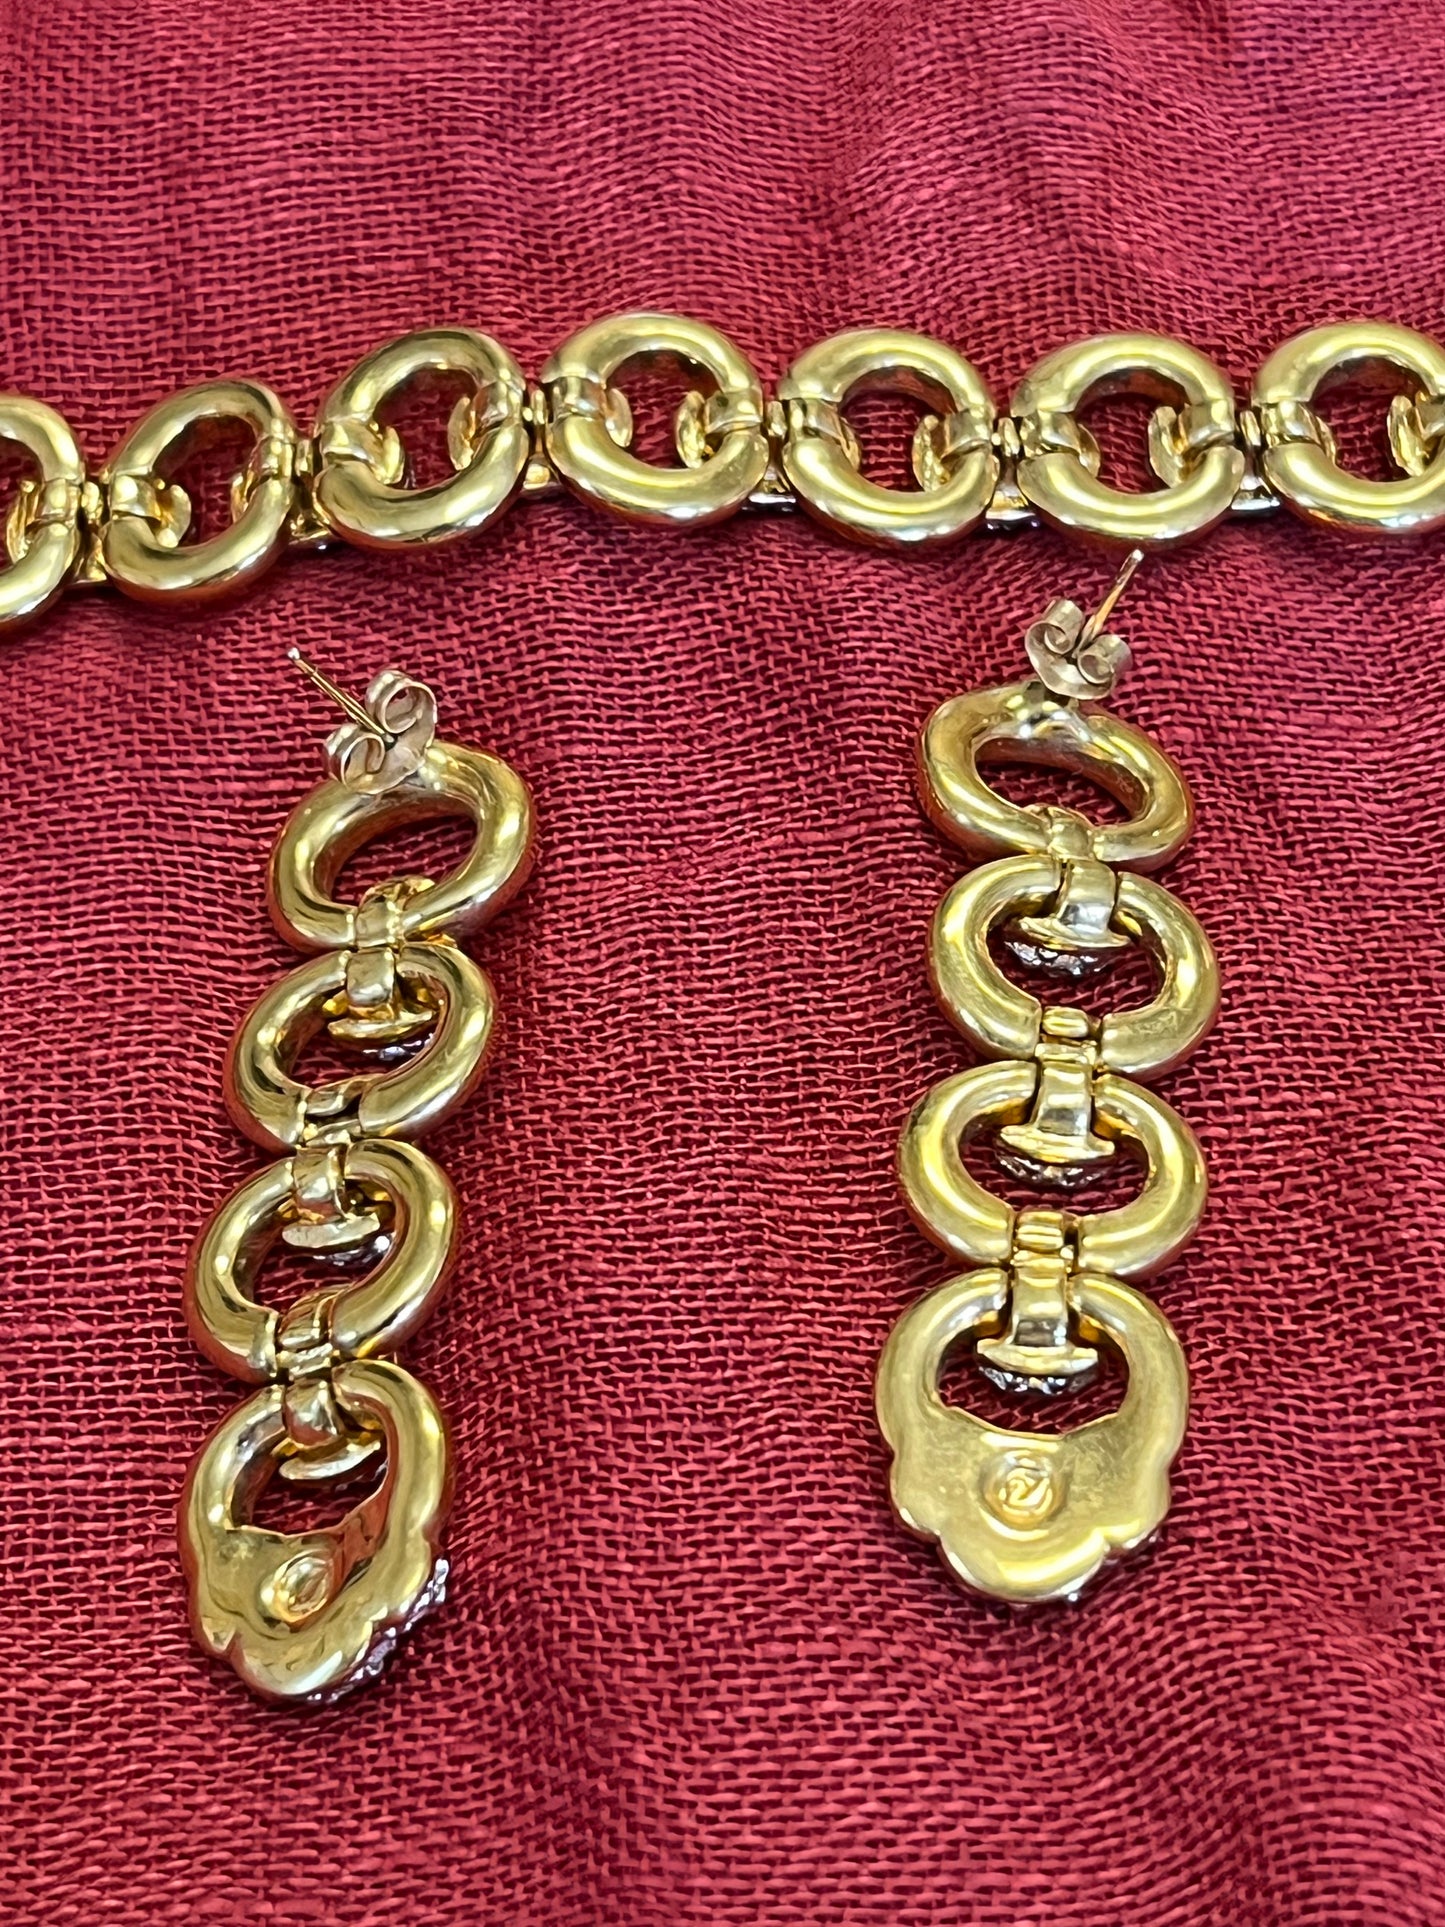 Vintage Swarovski Crystal Gold Tone Link Bracelet and Earring Set